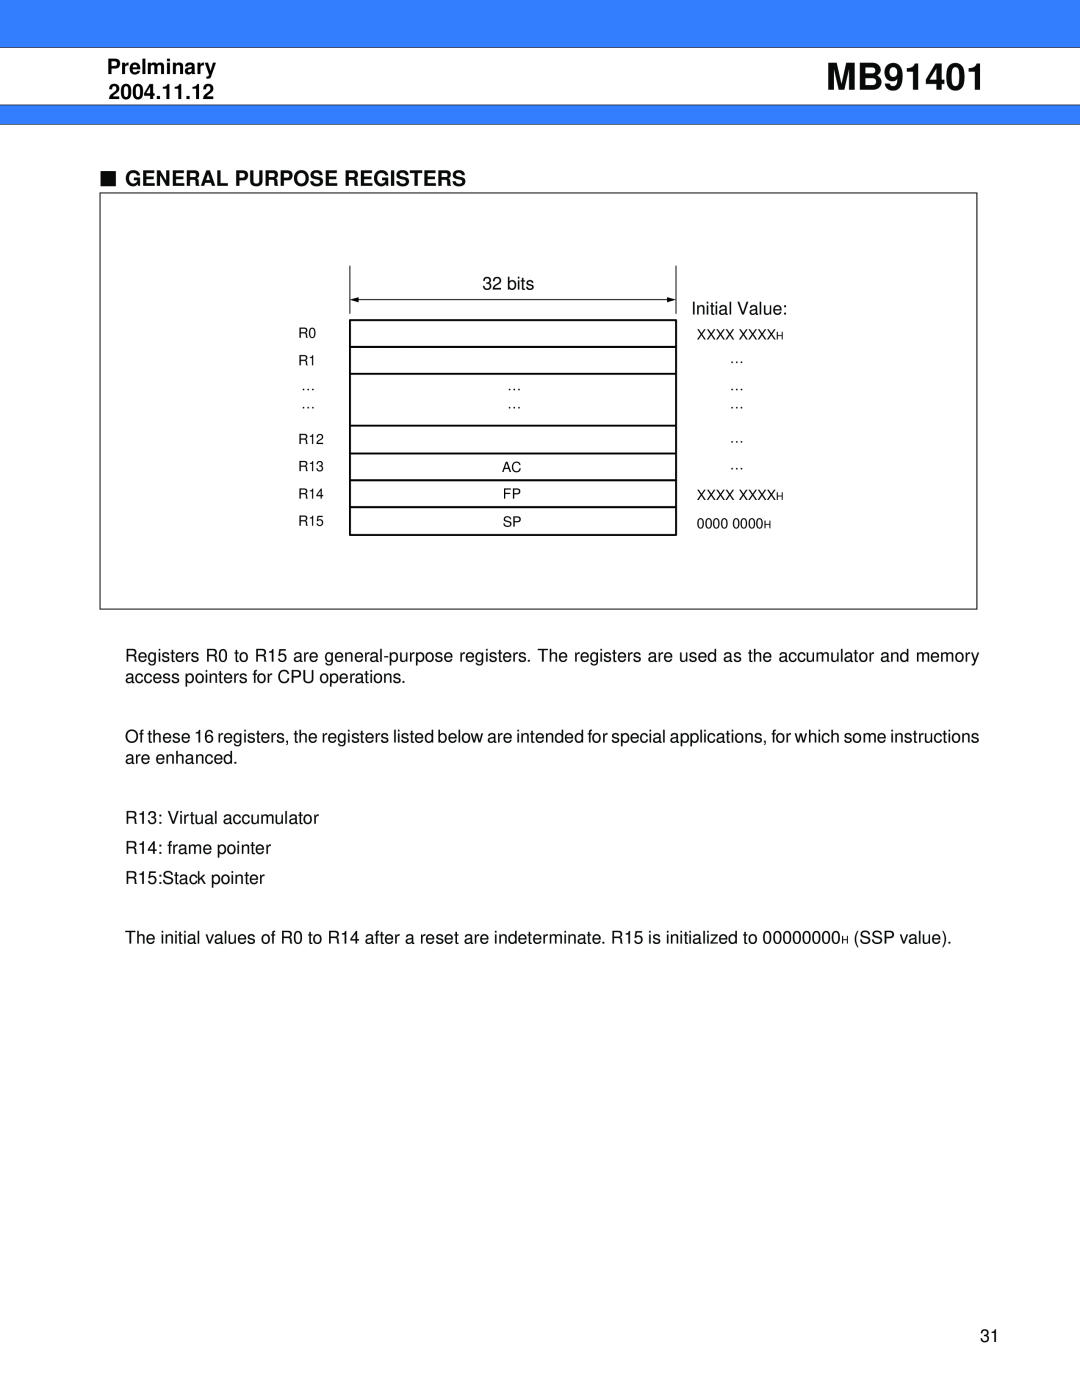 Fujitsu MB91401 manual General Purpose Registers, Prelminary, 2004.11.12 